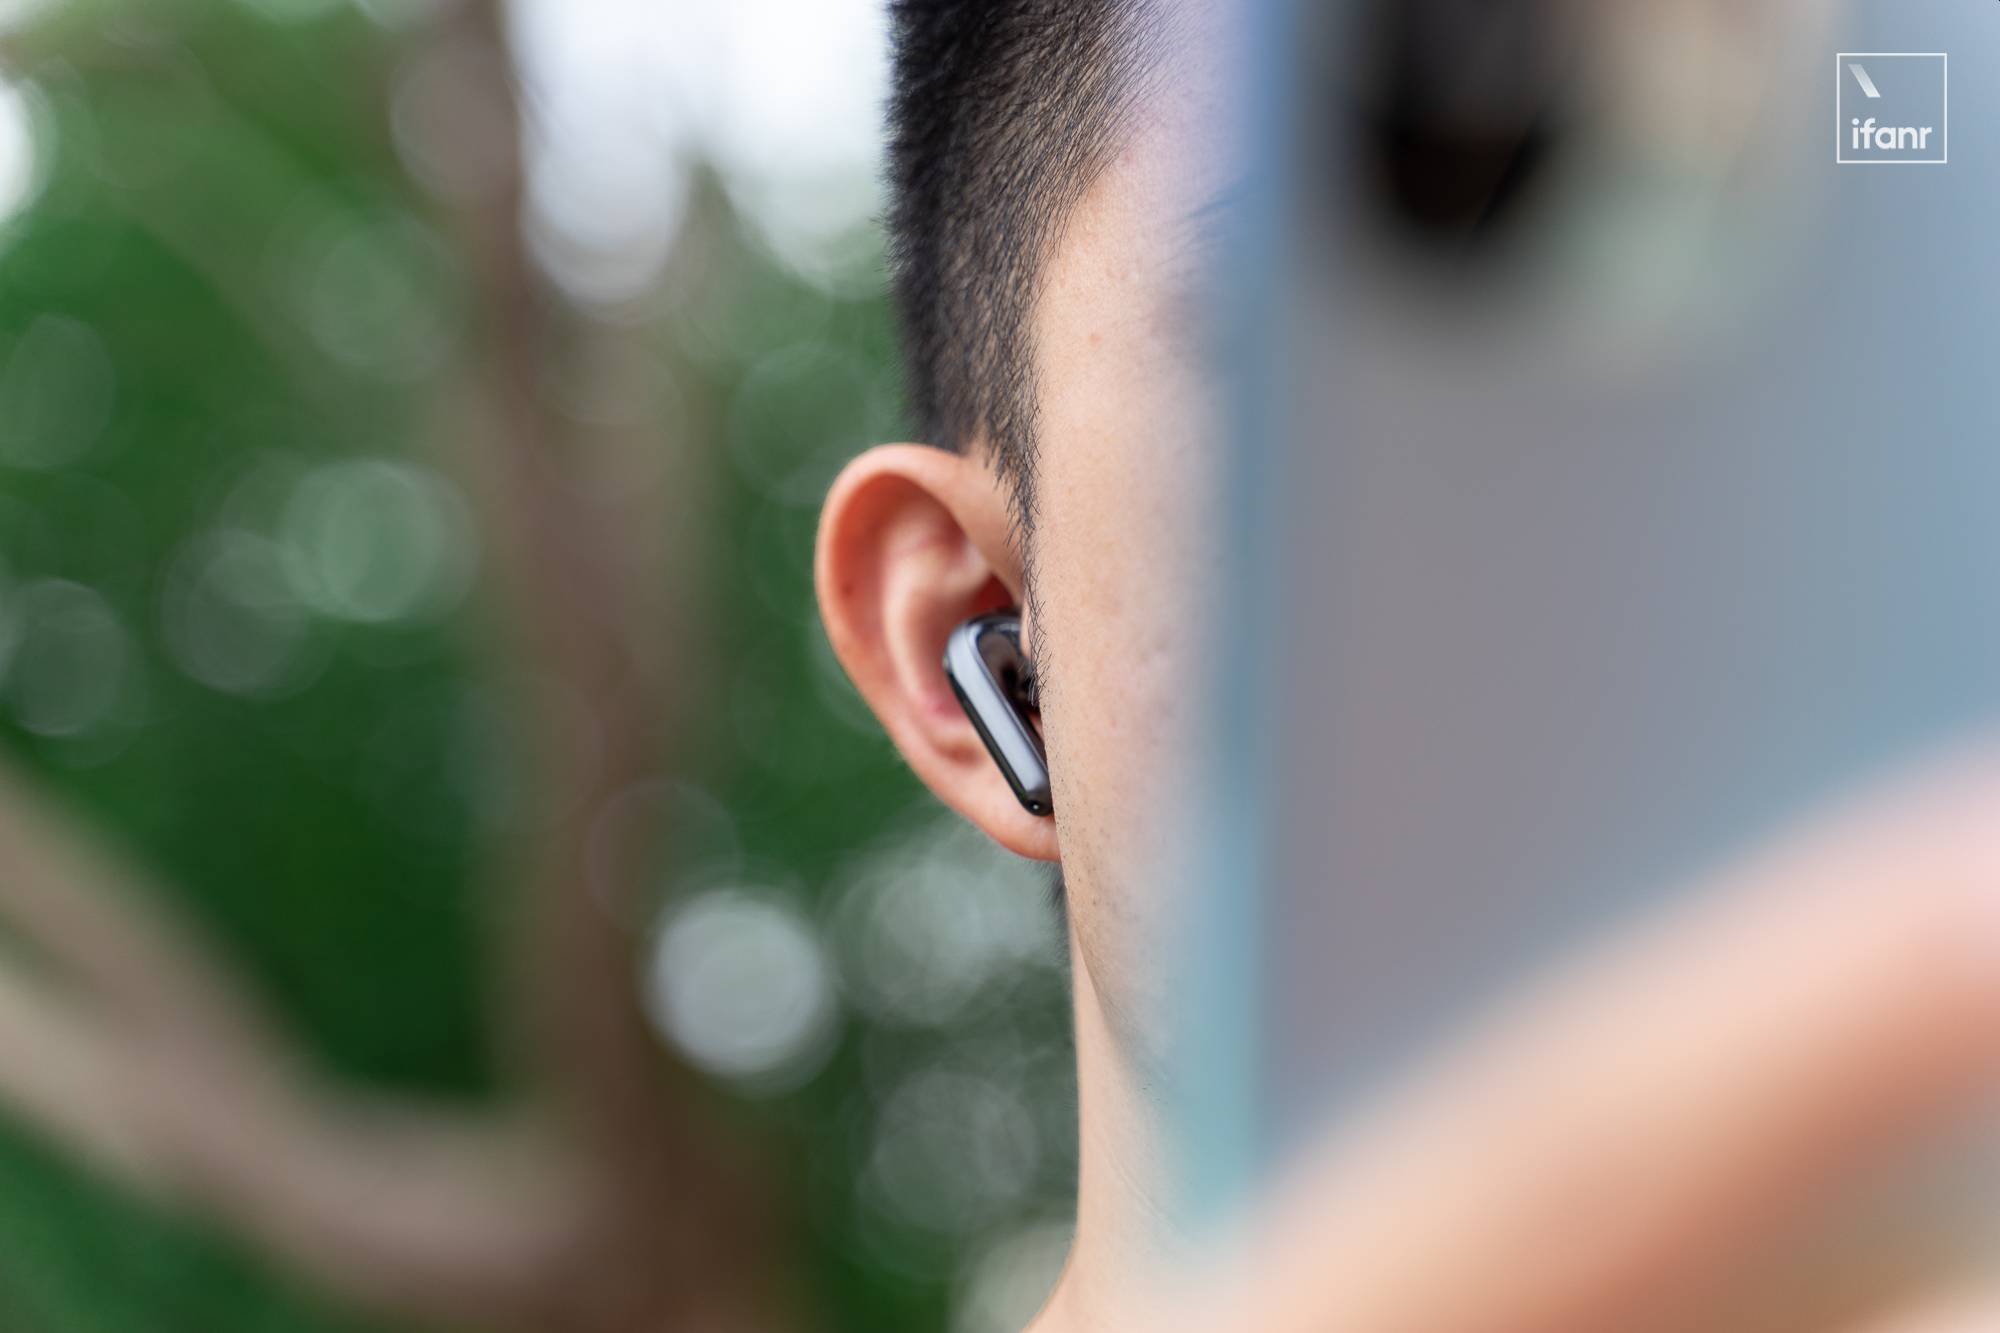 DSC06883 - Xiaomi Noise Cancelling Headphones Pro prima esperienza: entro mille yuan, eccezionale riduzione del rumore, buona qualità del suono